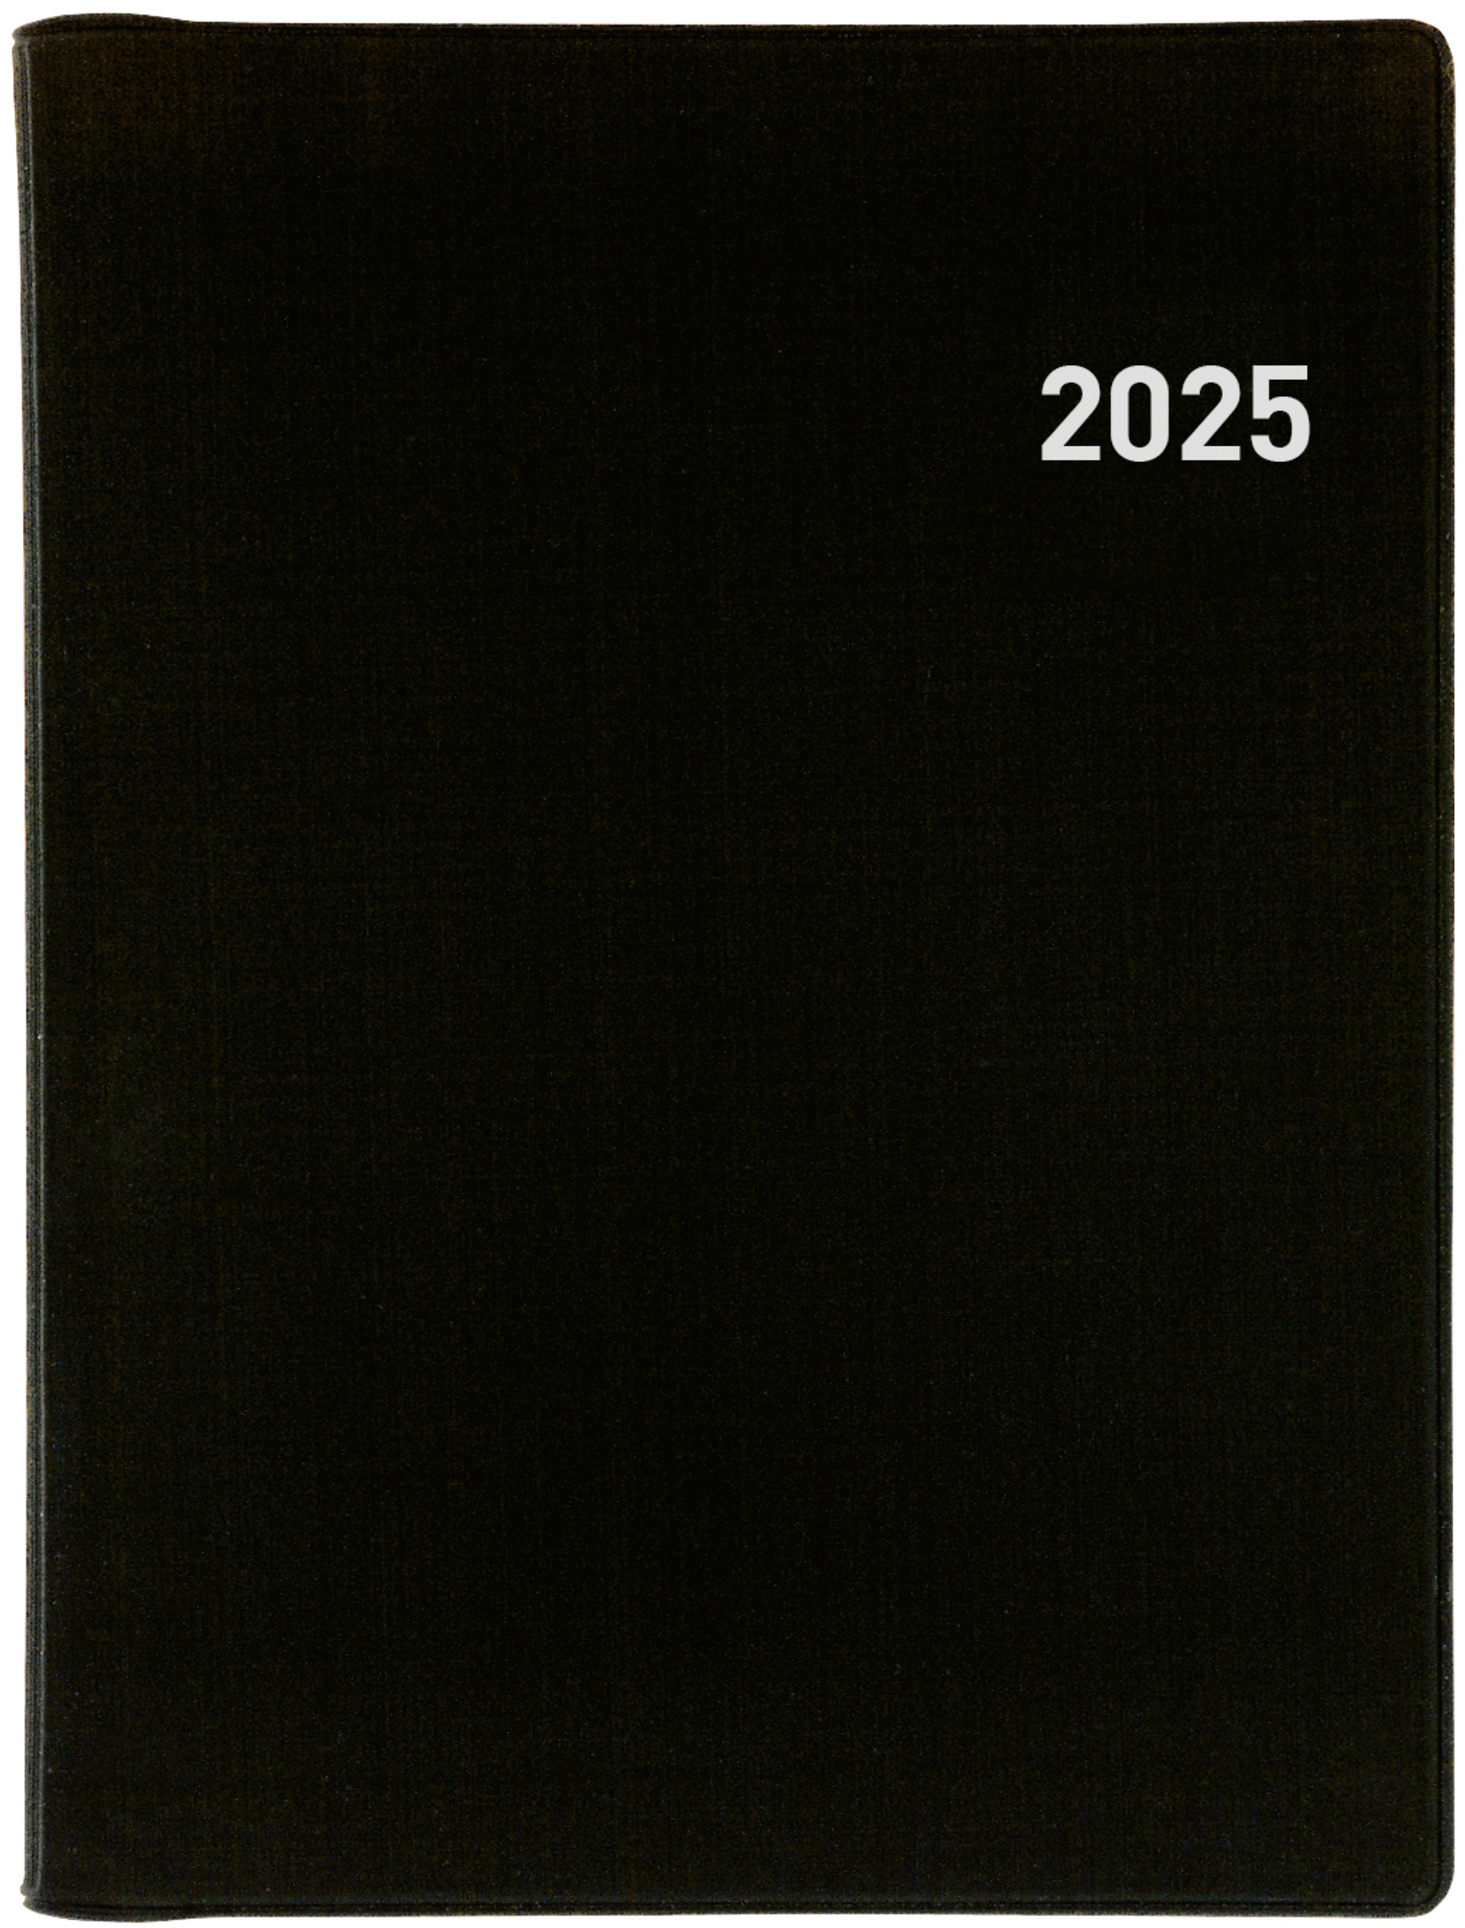 BIELLA Agenda Memento Wire-O 2025 858673020025 1S/2P noir ML 10.1x14.2cm